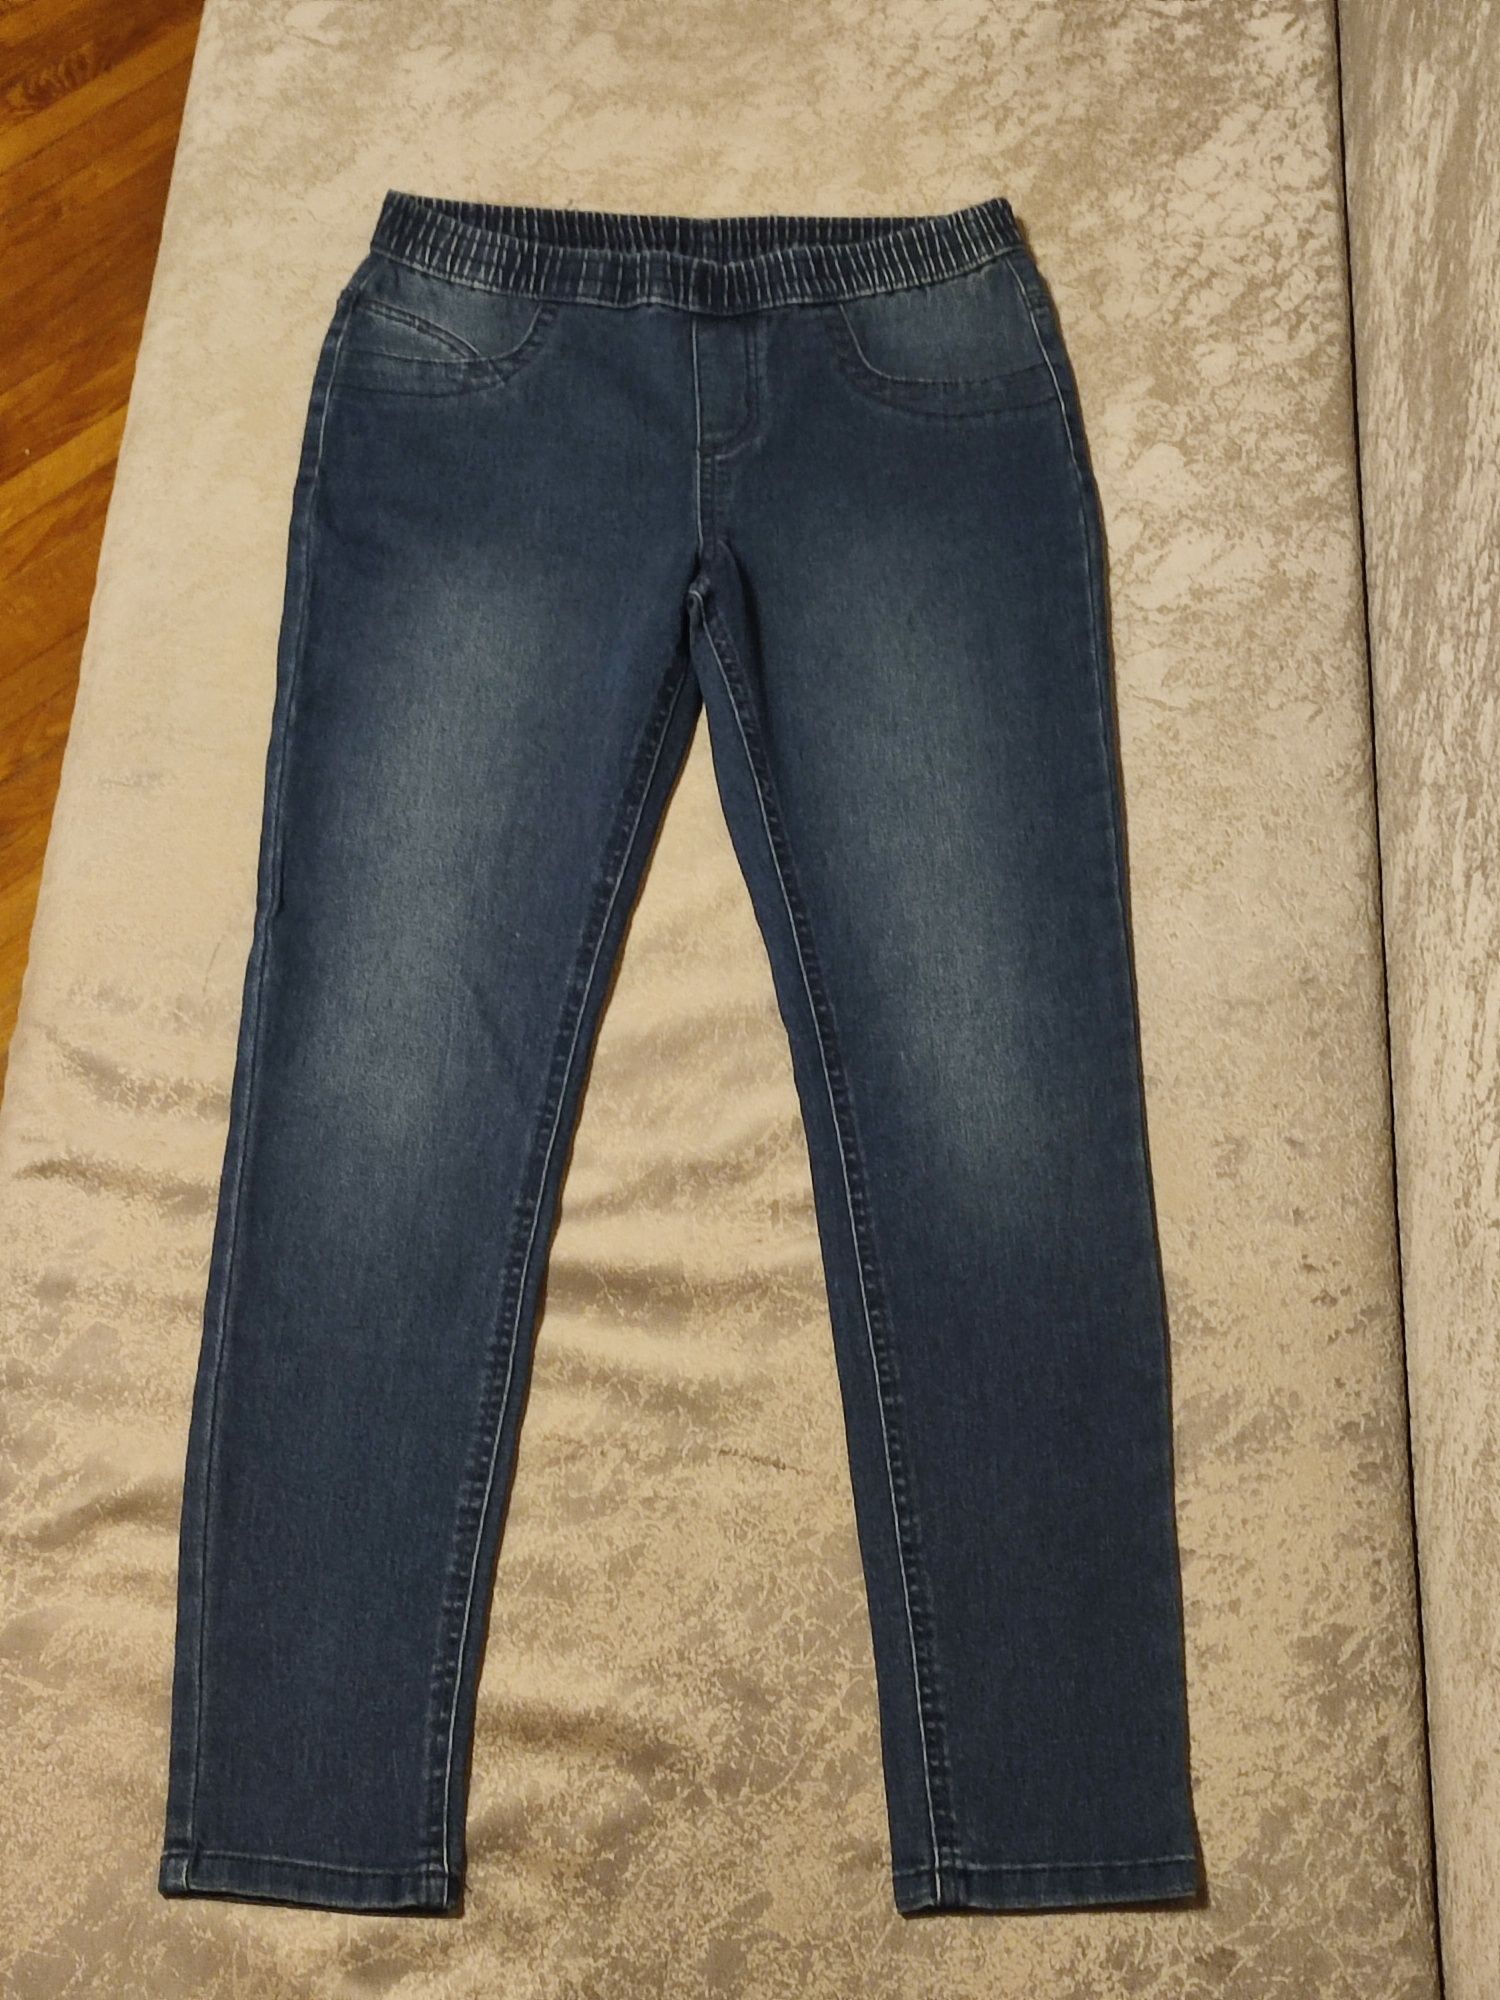 джинсы, брюки женские р.48, 48-50 и 42-44